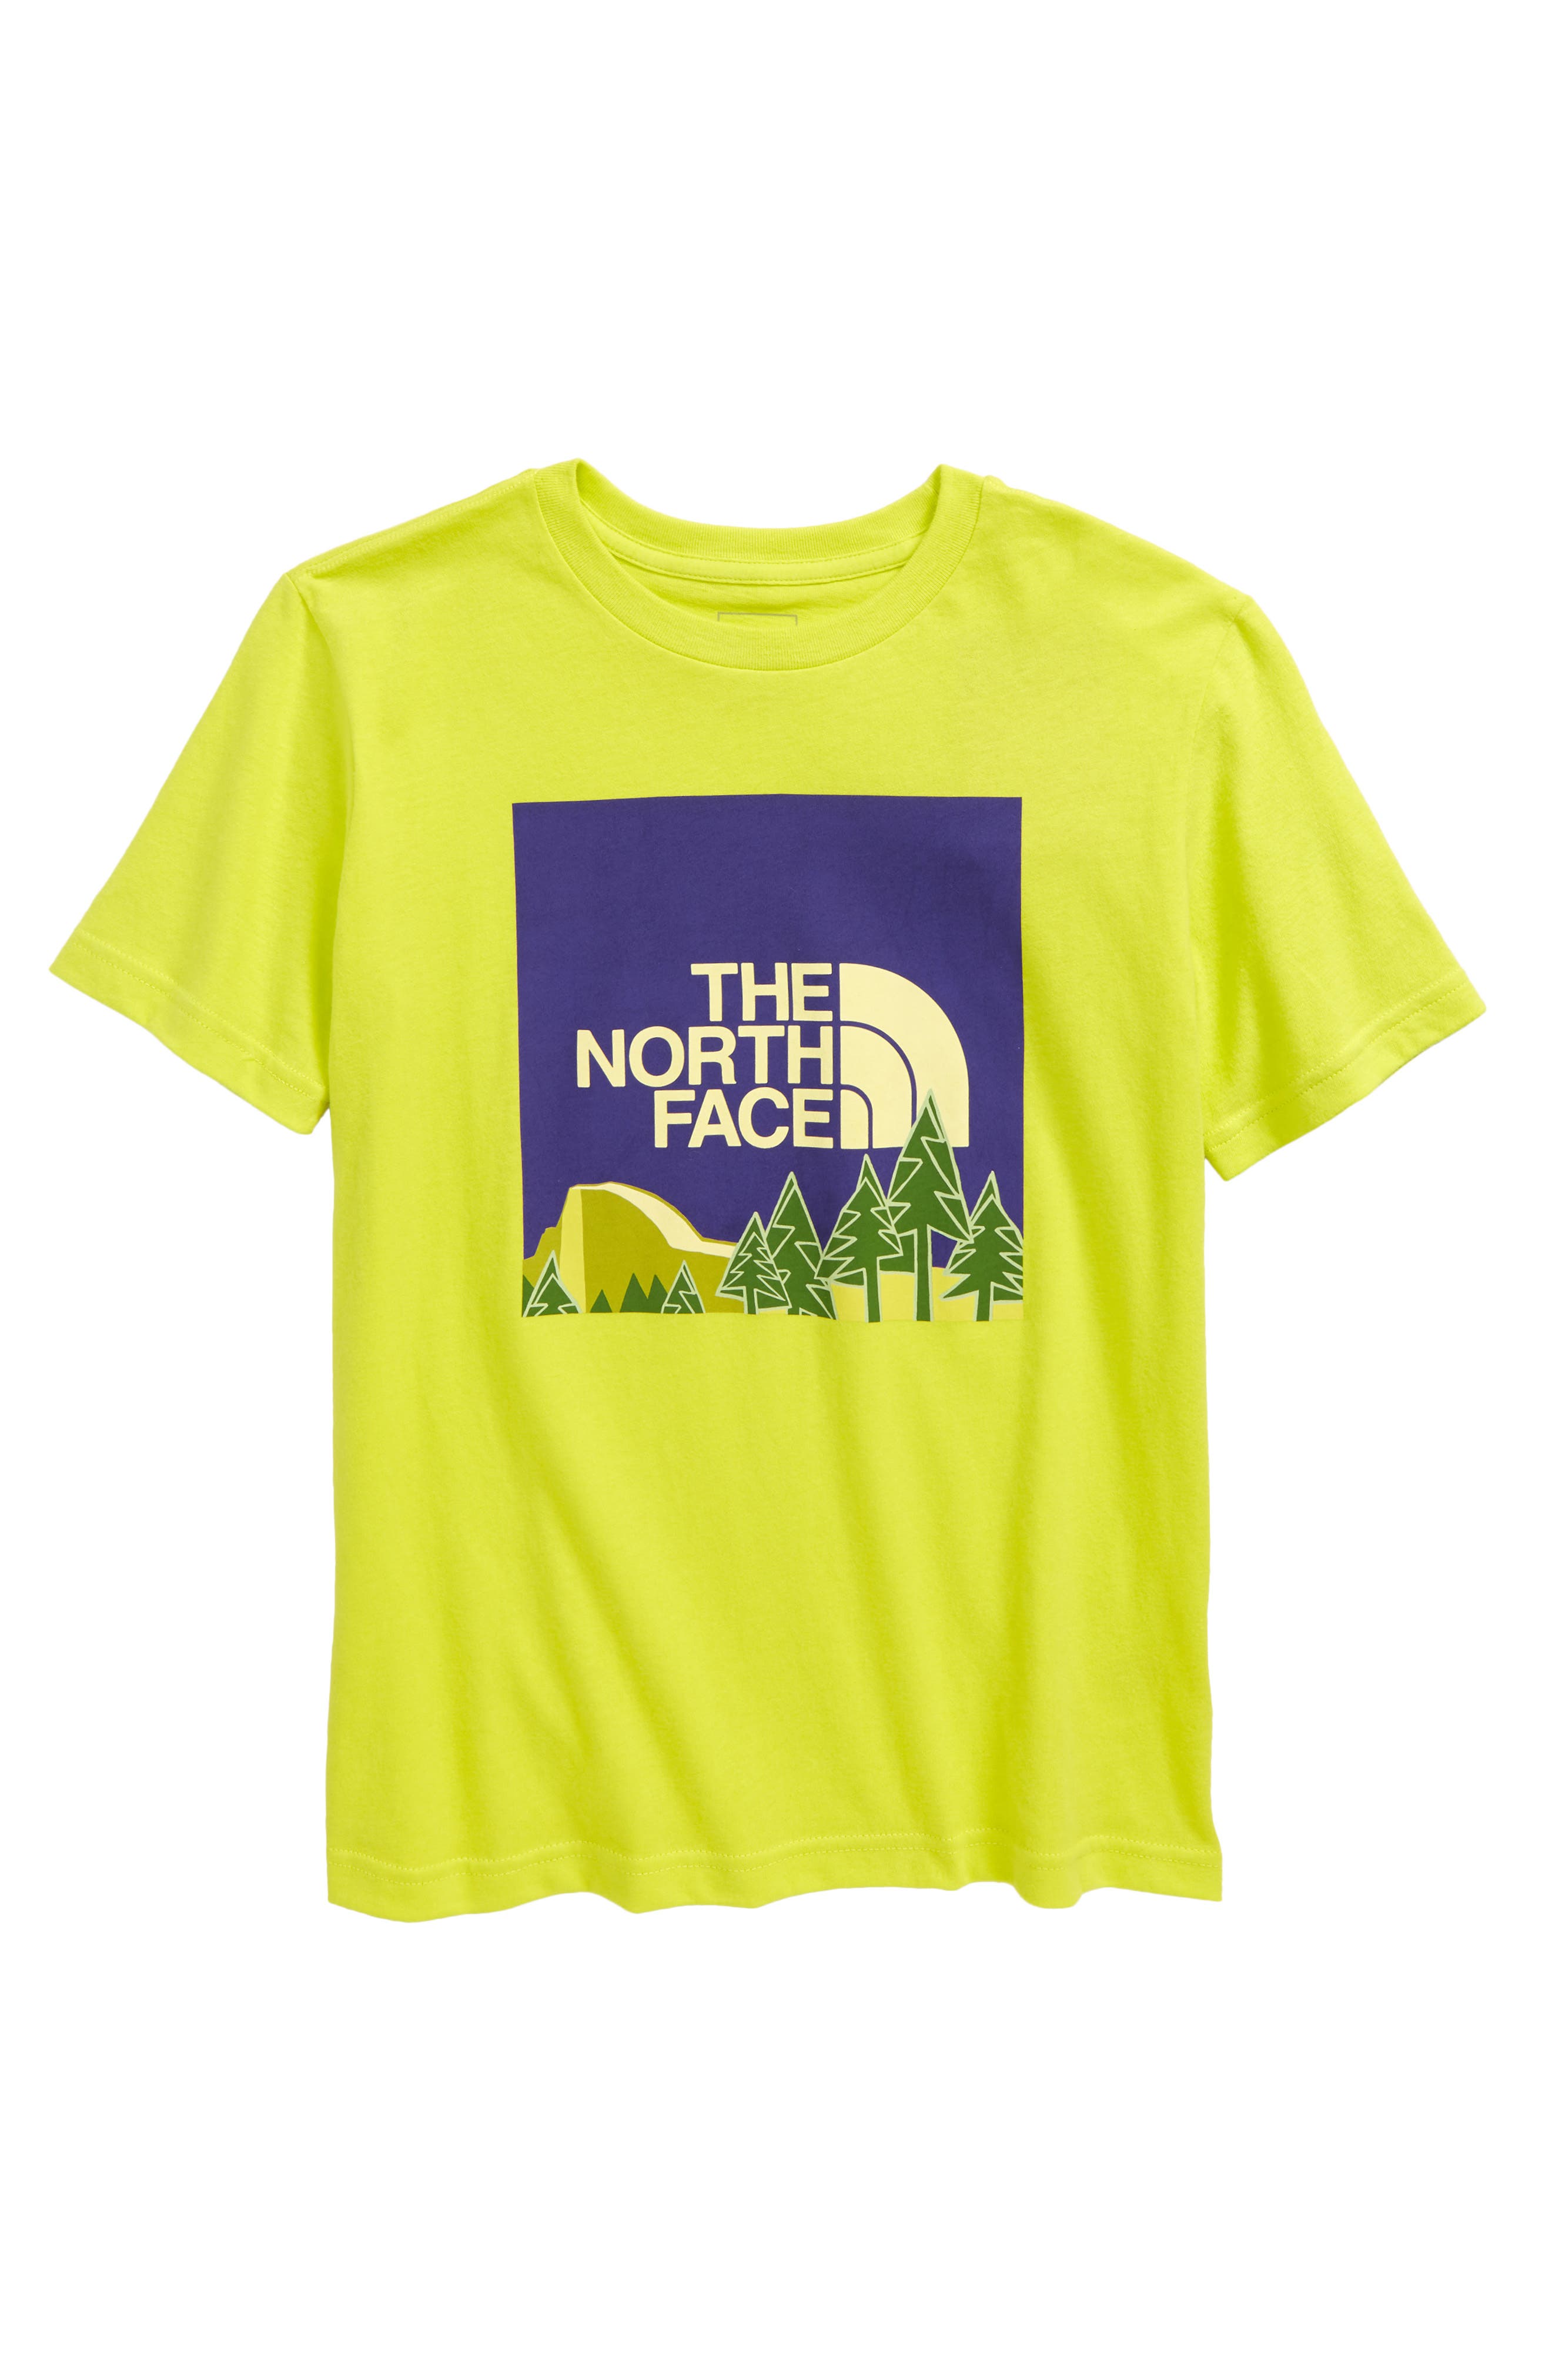 boys north face shirts